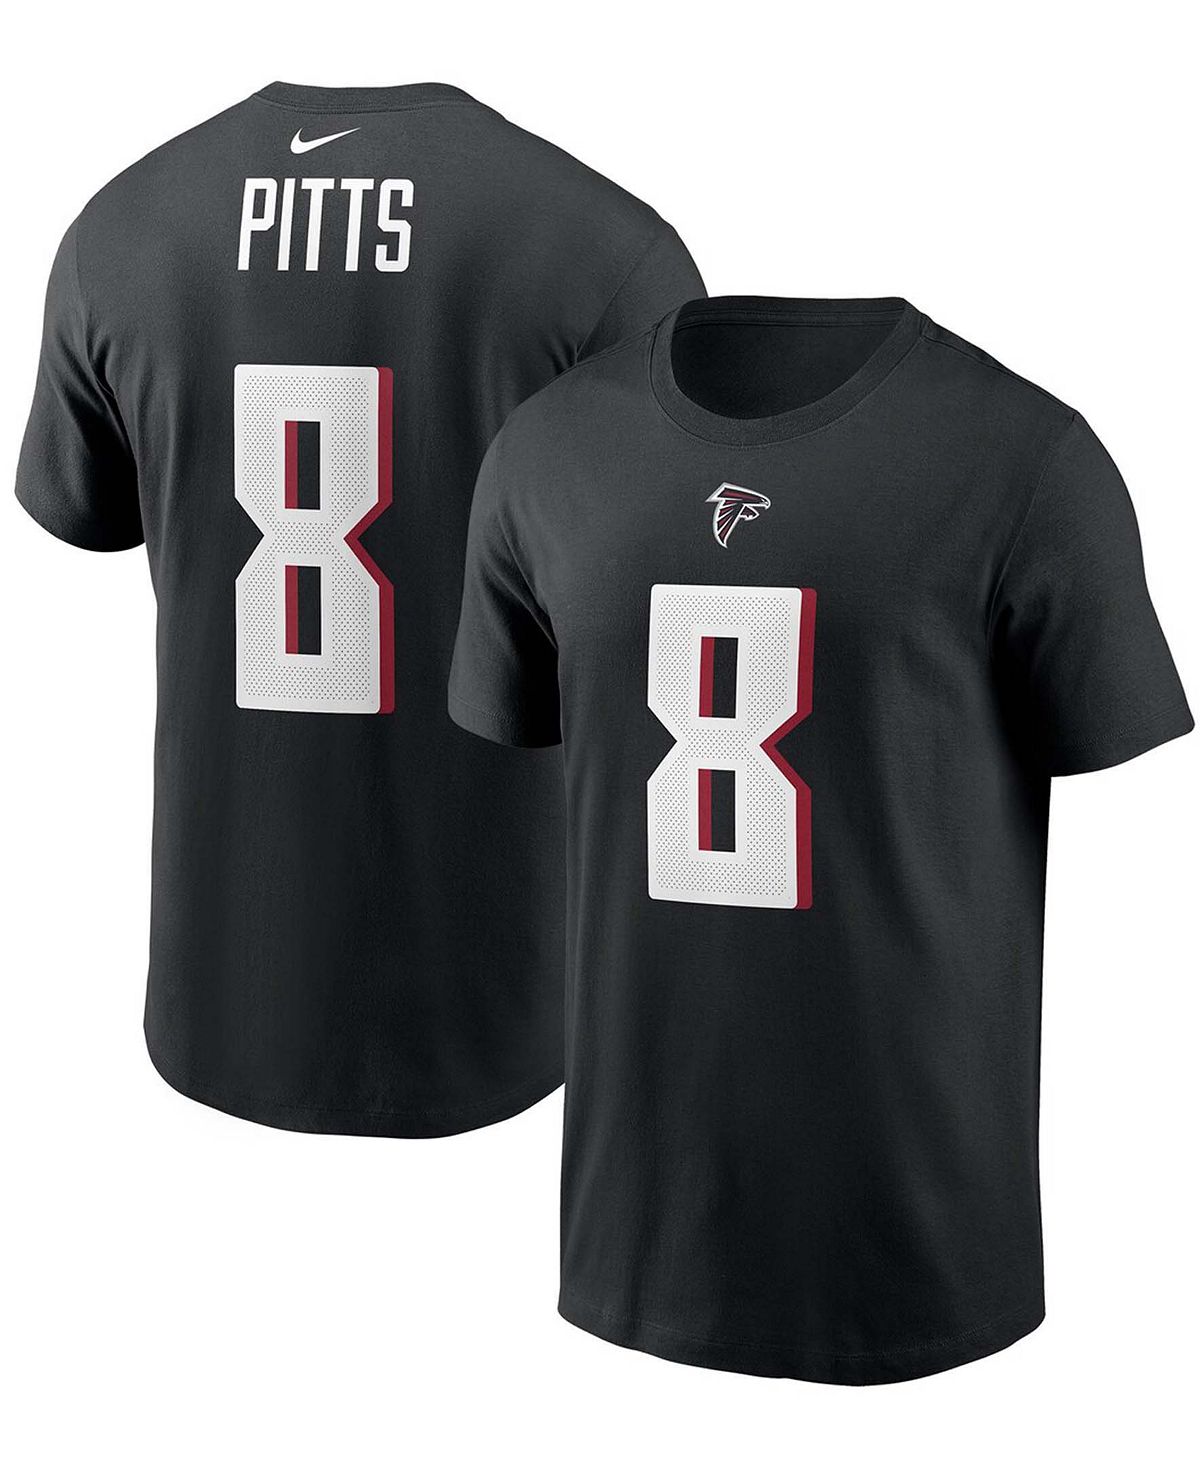 Мужская футболка kyle pitts black atlanta falcons 2021 nfl draft first round pick с именем и номером игрока Nike, черный